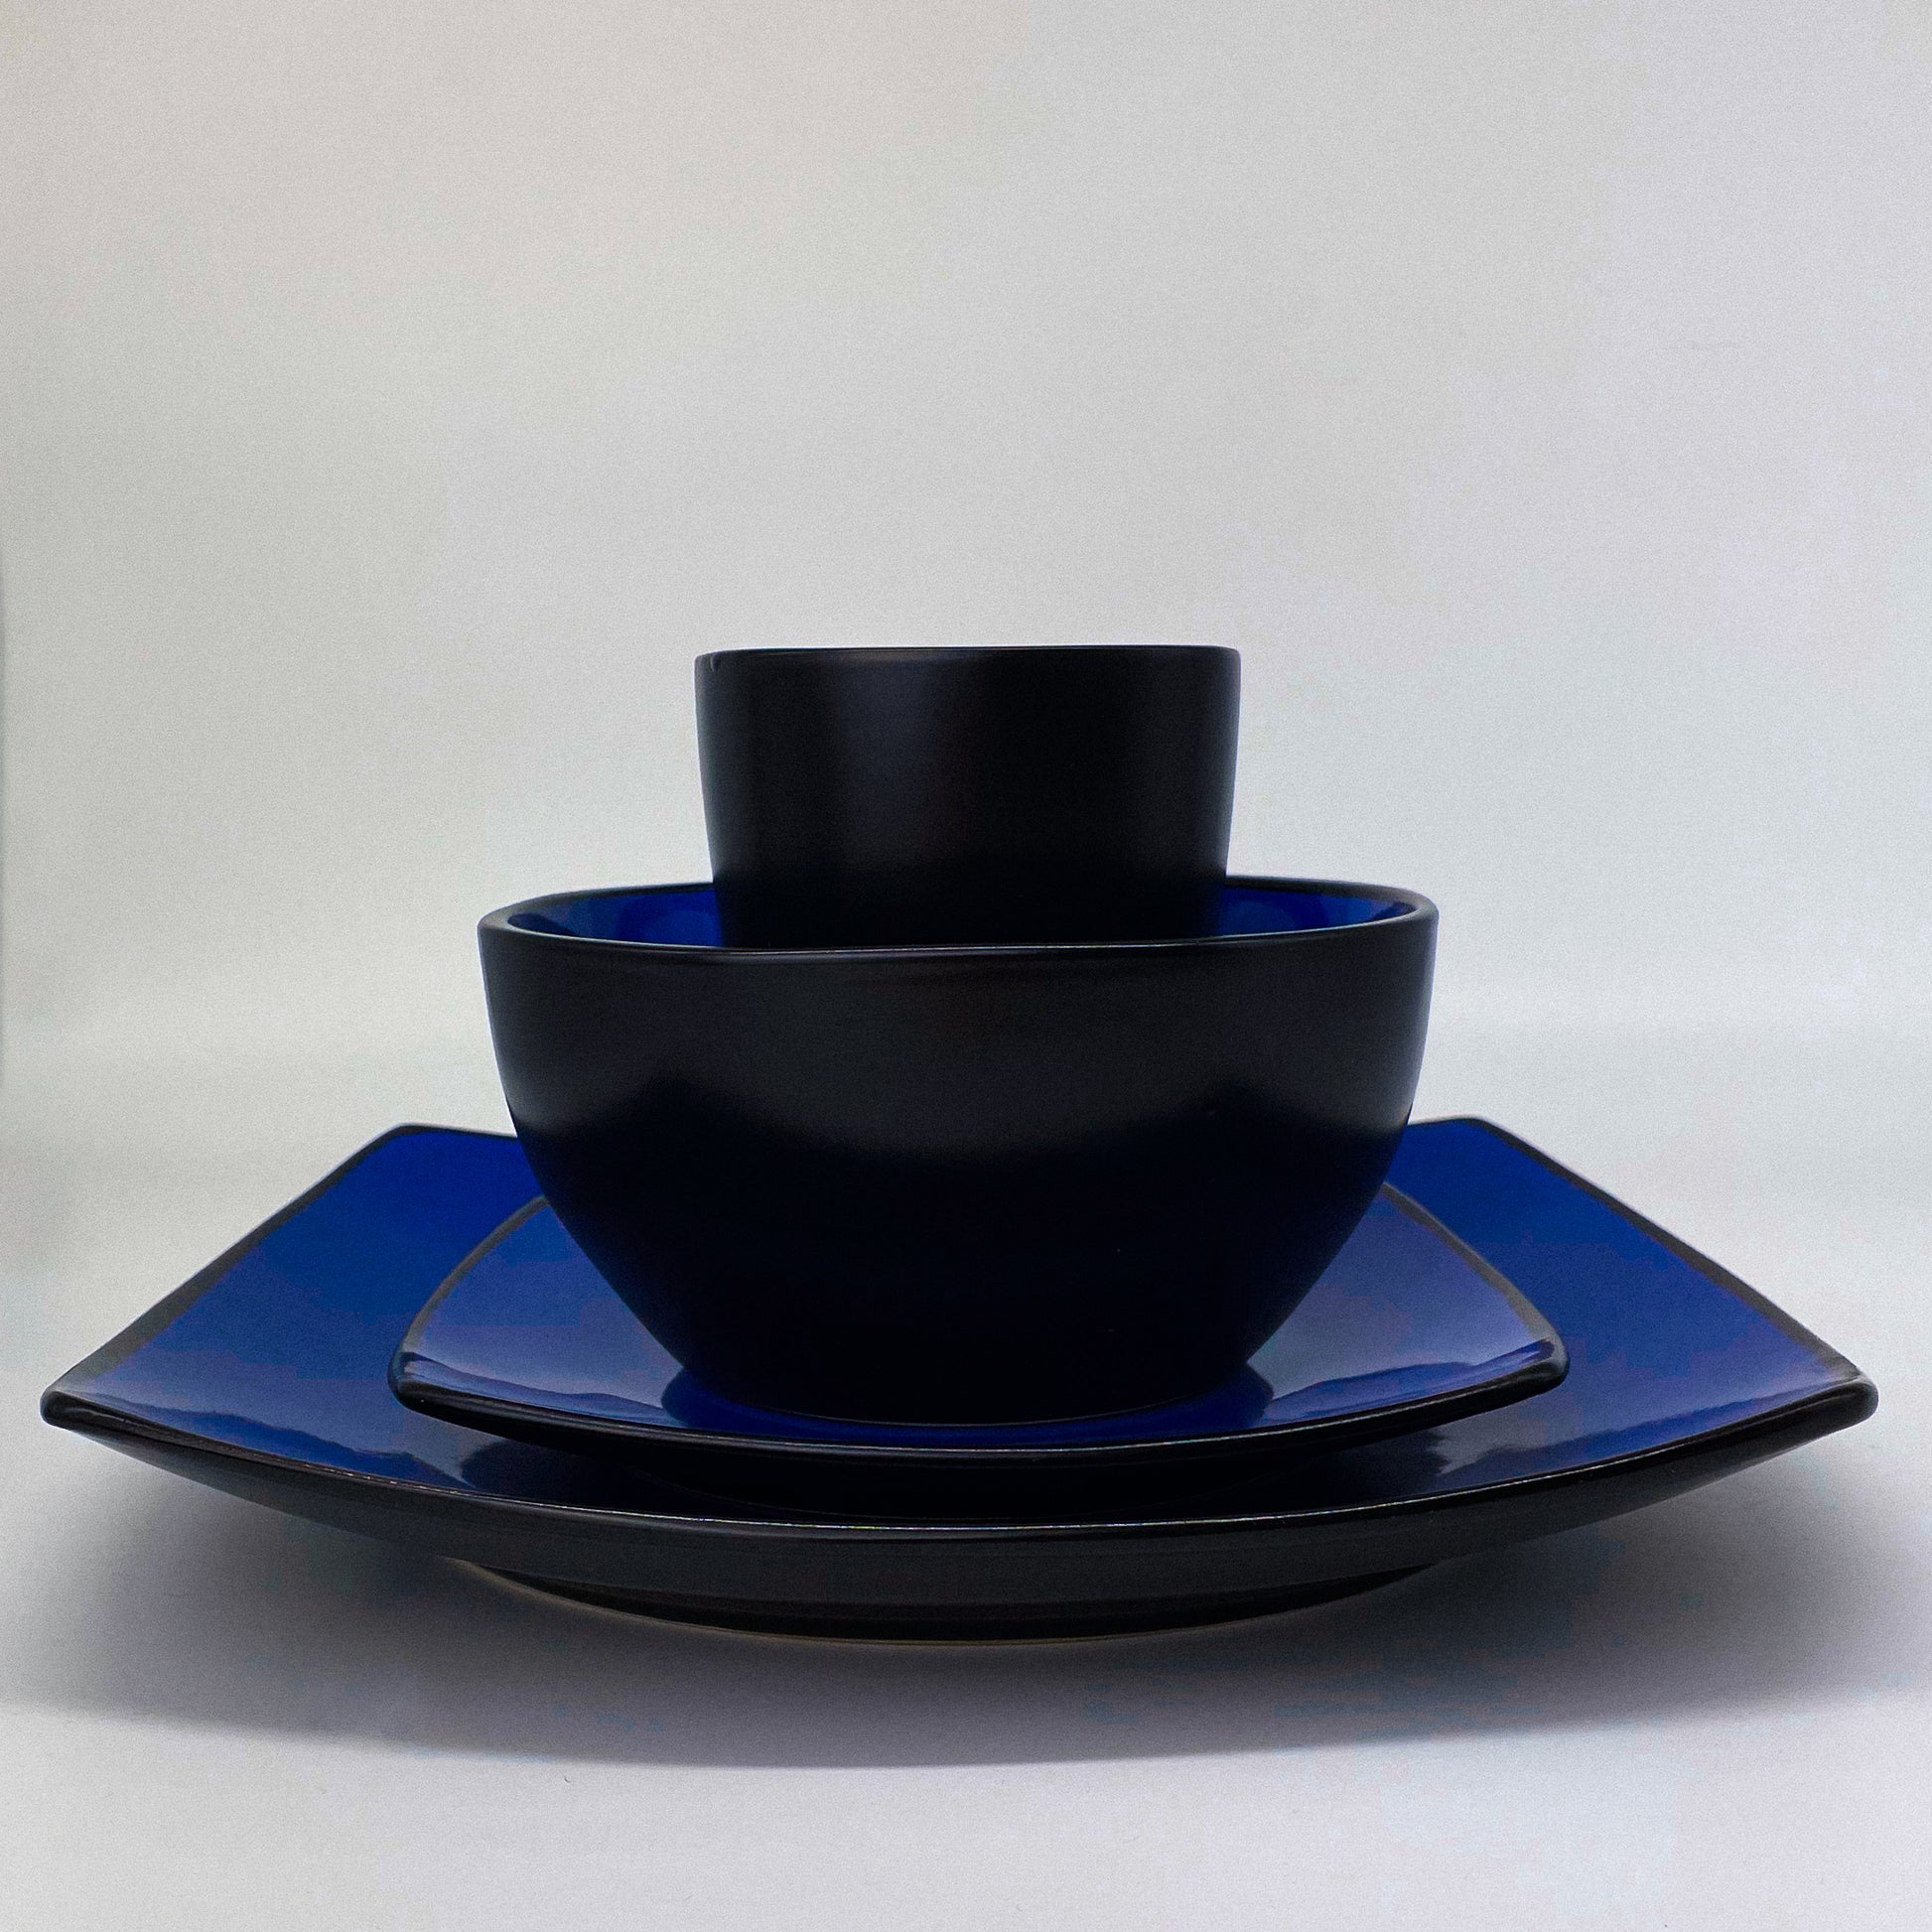 Geschirrset mit großem und kleinen Teller, Schüssel und Tasse in Blau von MIAMIO Marsili Kollektion